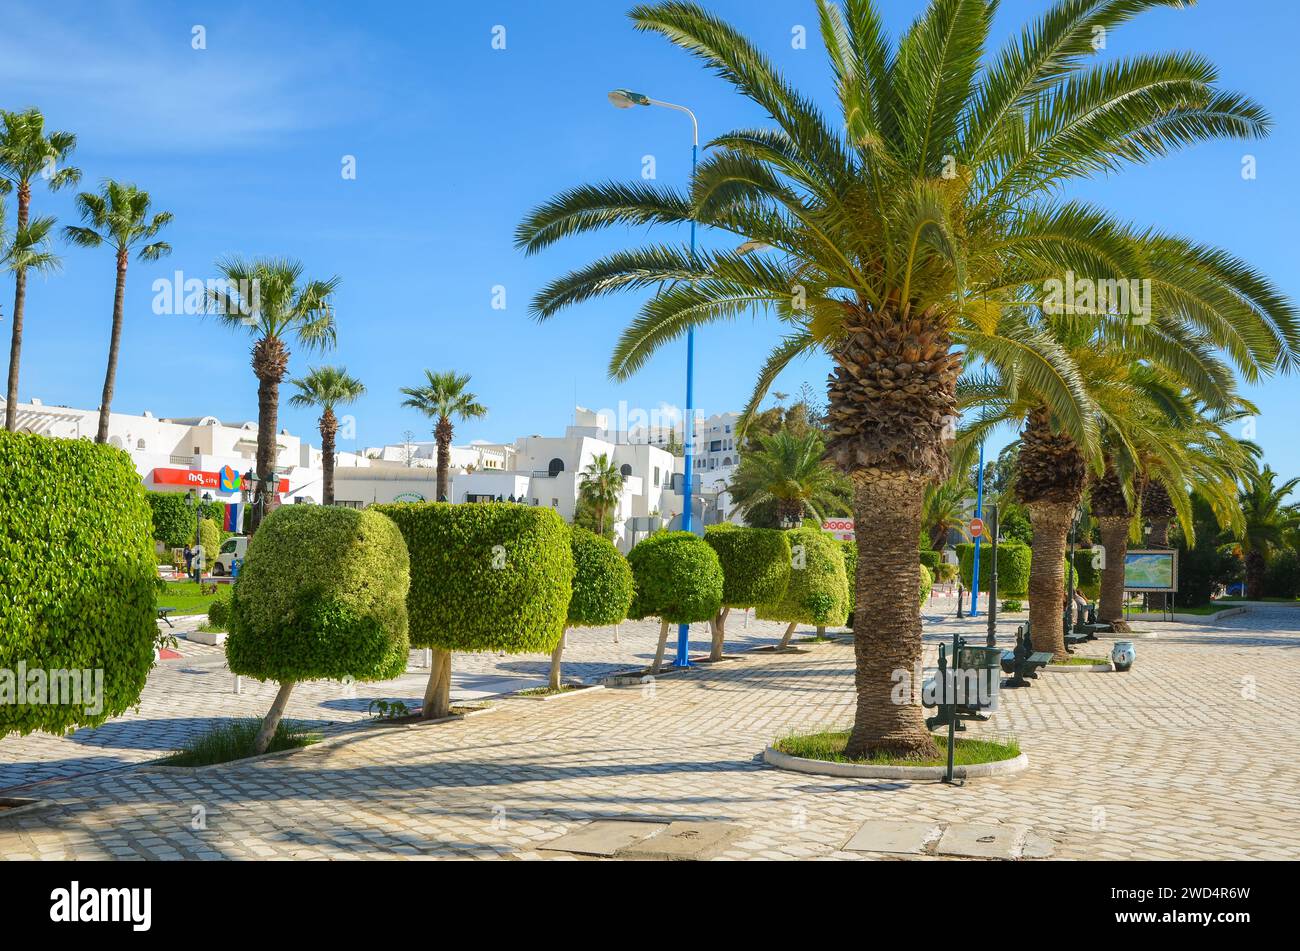 Port El Kantaoui, Sousse, Tunisie. La place principale en face de la porte menant à la marina. Banque D'Images